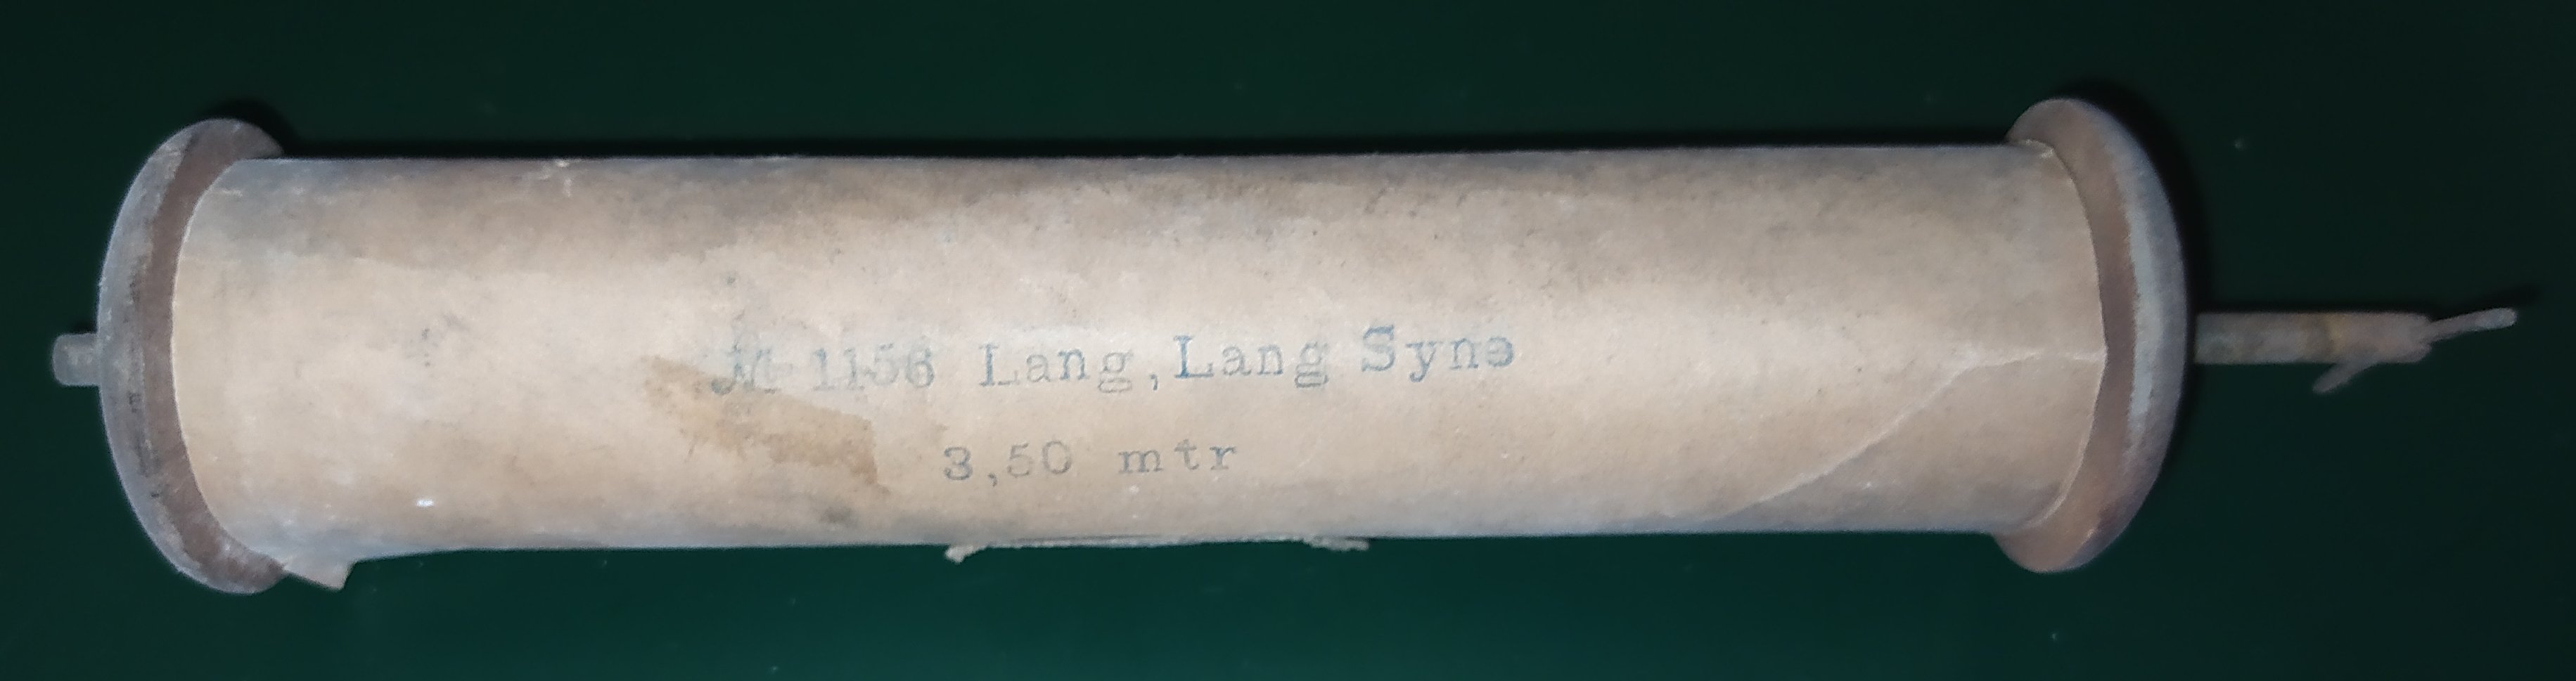 Lang, lang, Syne (HKK CC BY-NC-SA)